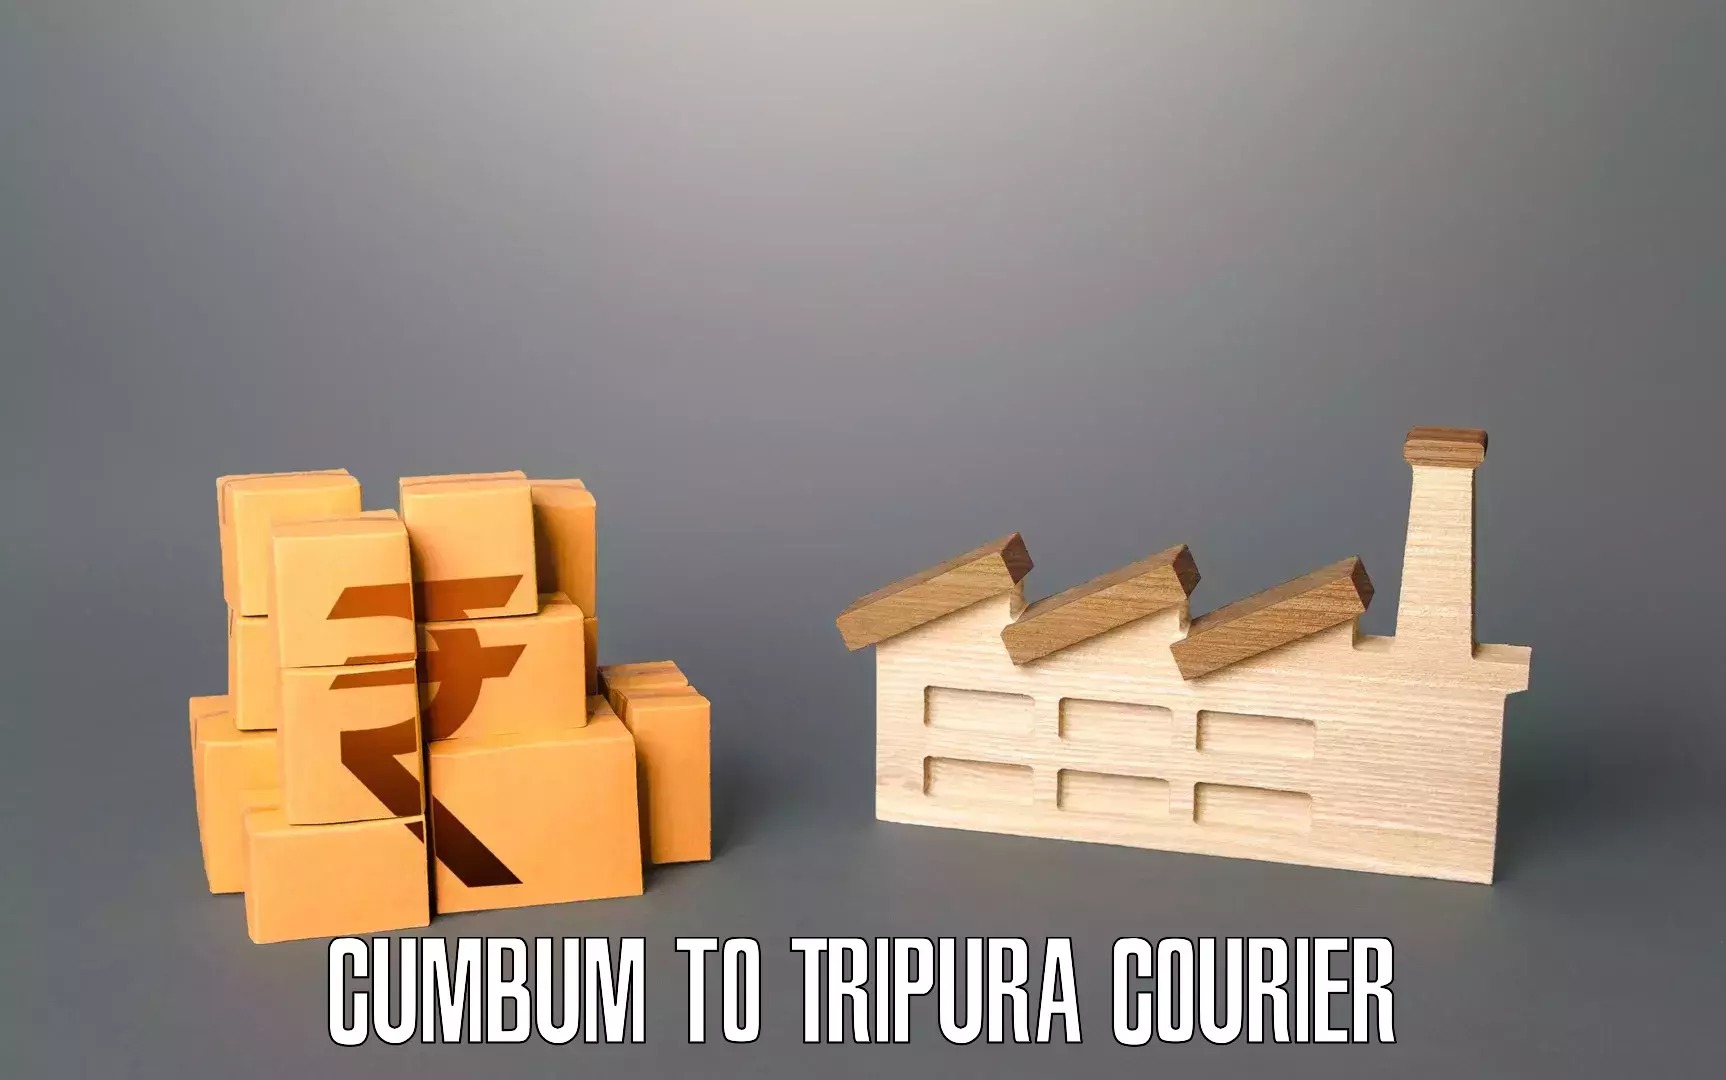 Furniture moving service Cumbum to West Tripura